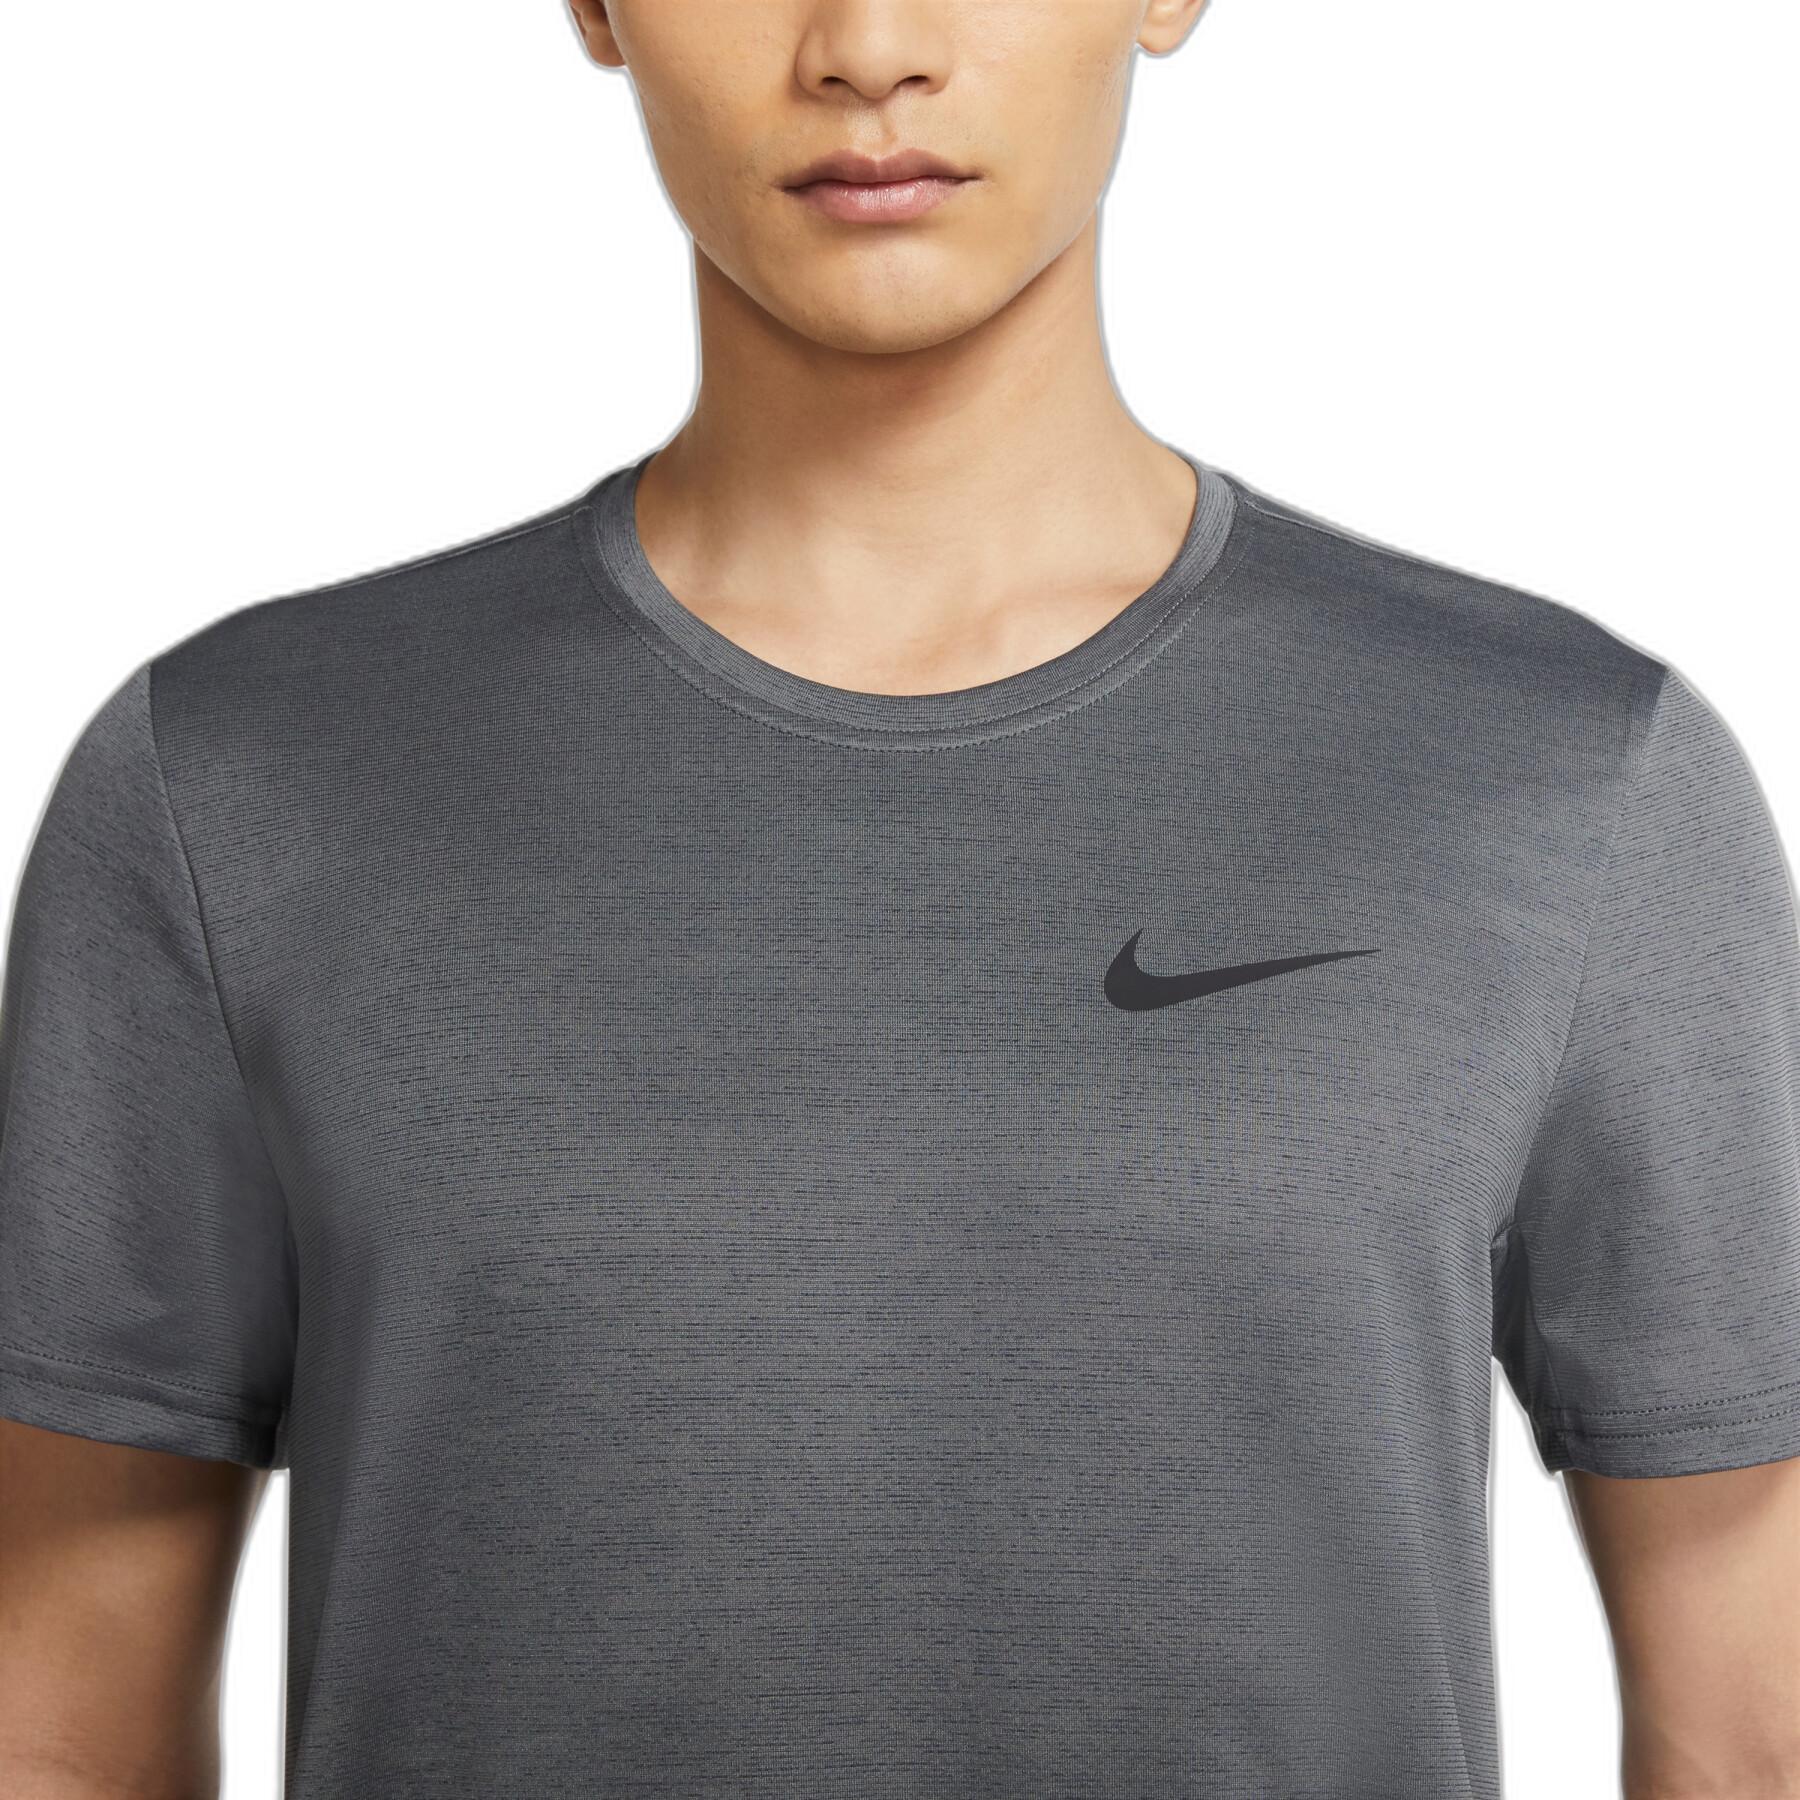 Camiseta Nike Dri-Fit Superset